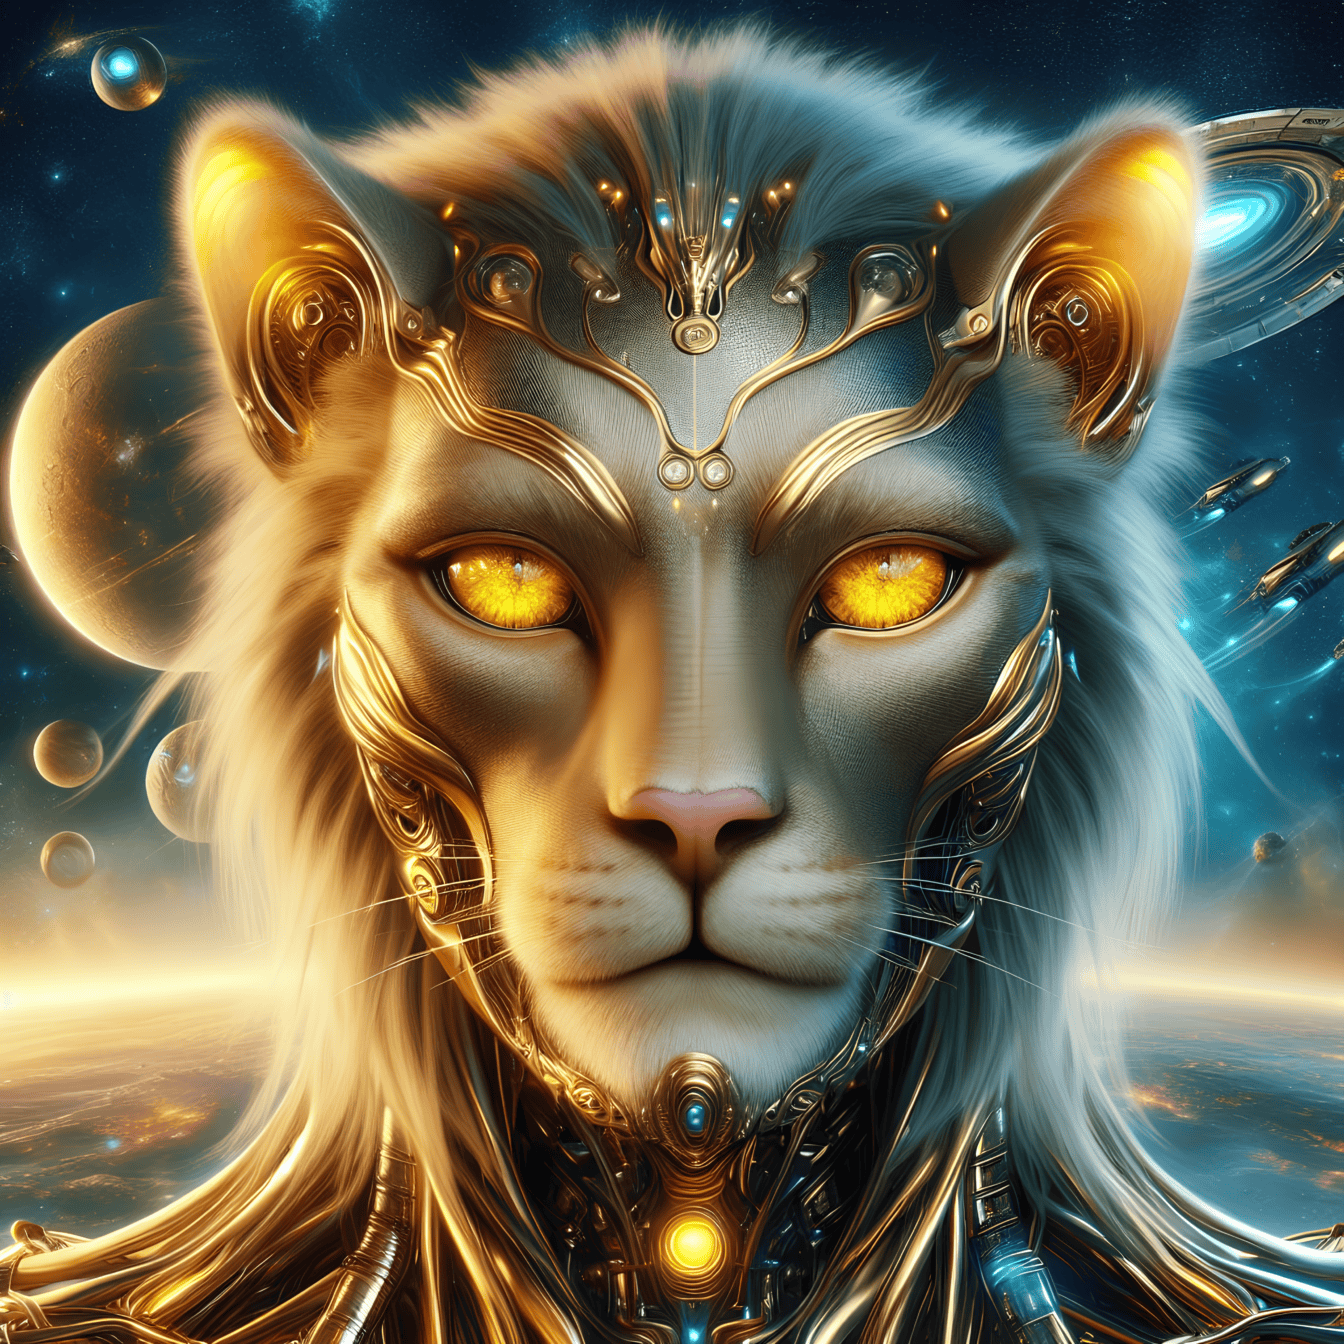 Portrait d’une divinité dorée, un lion-cyborg extraterrestre venu d’une autre planète